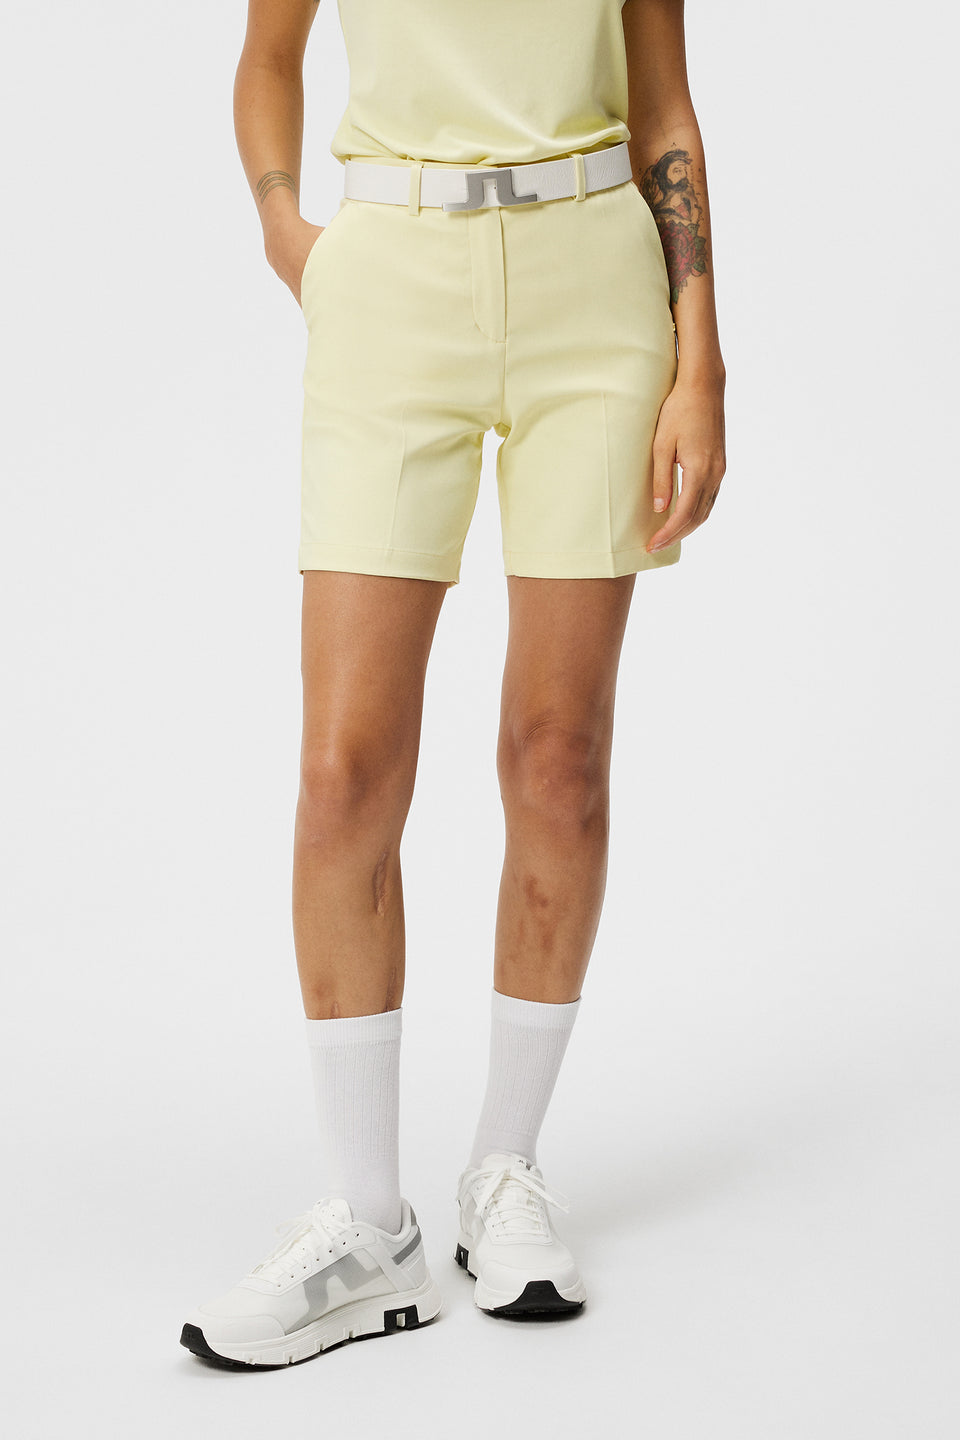 Gwen Long Shorts / Wax Yellow